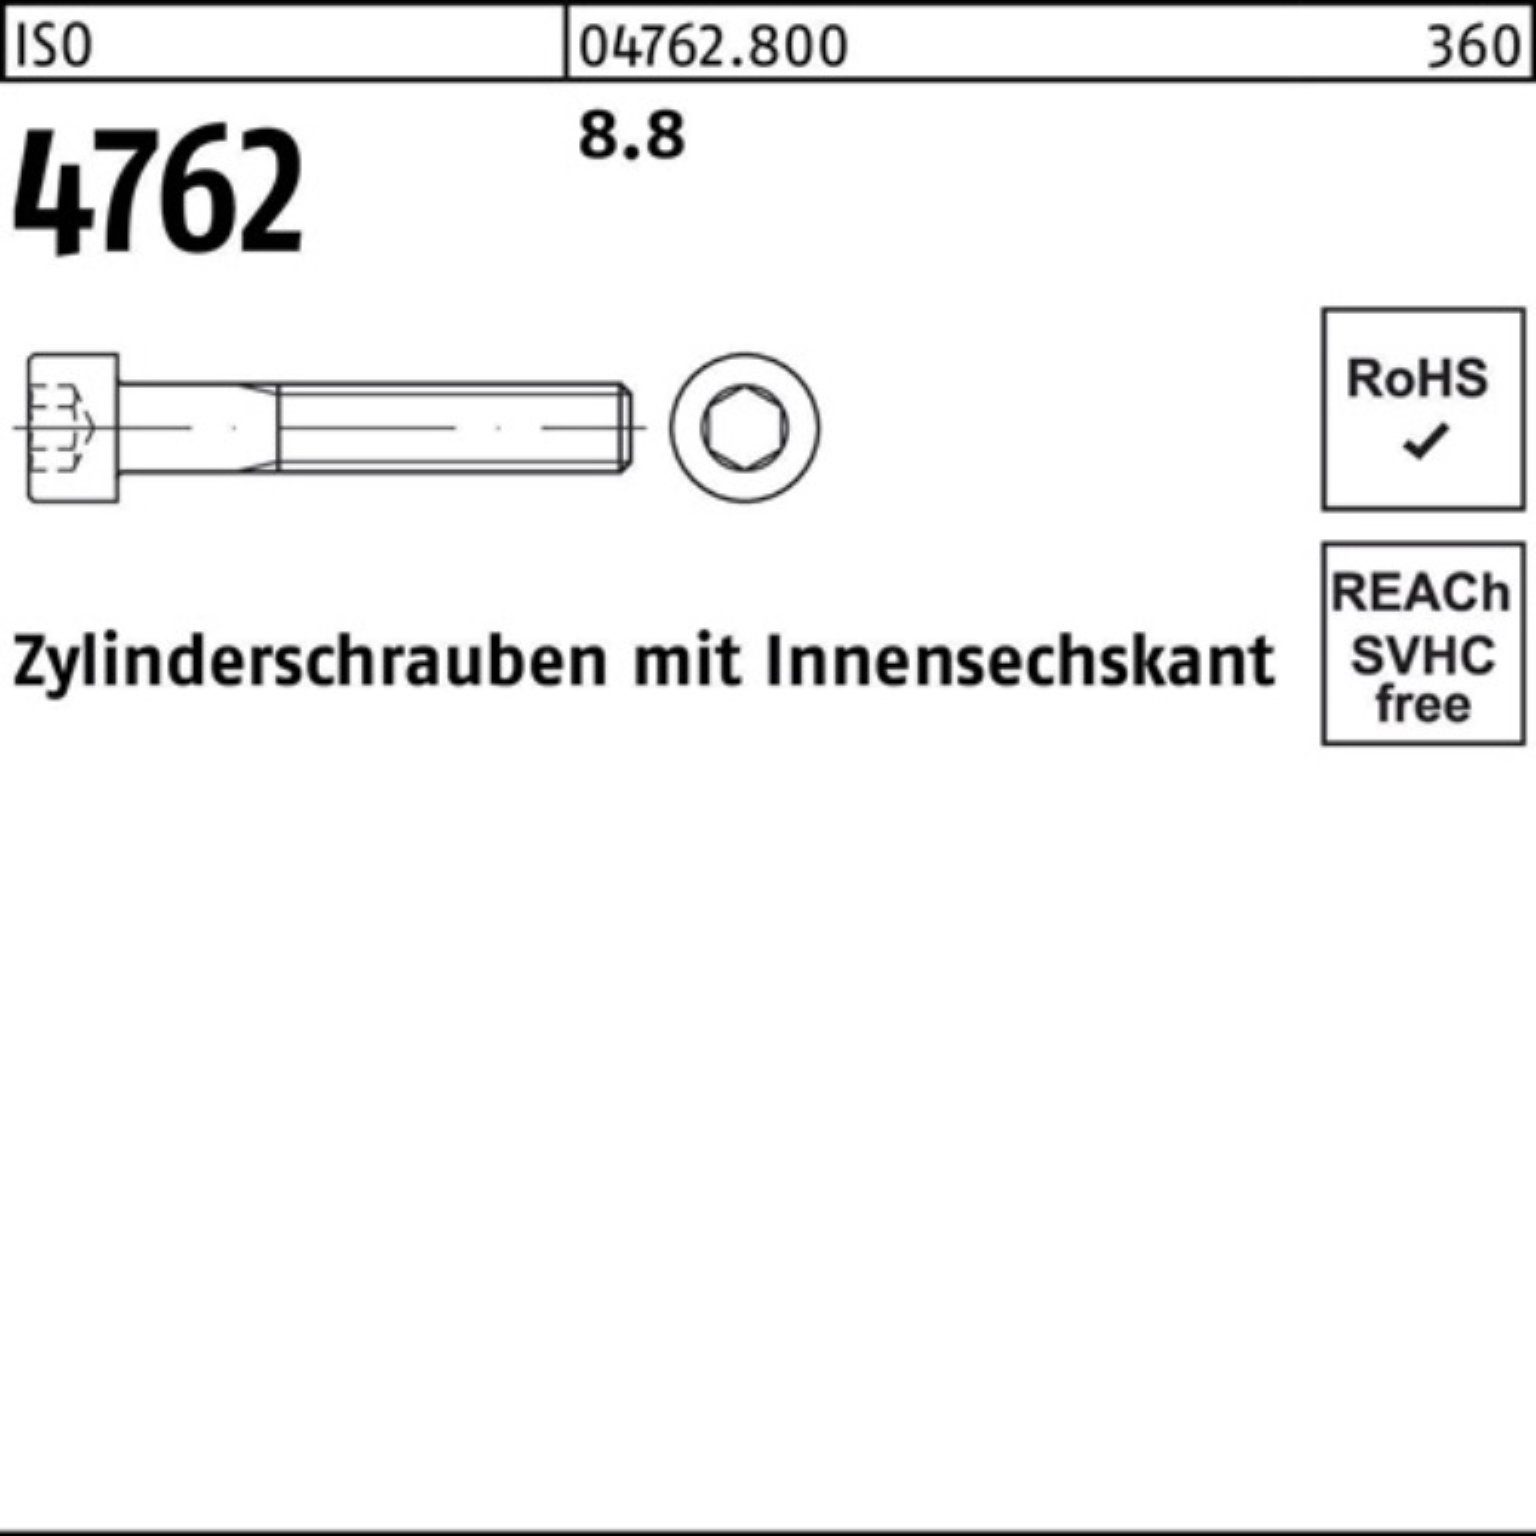 Zylinderschraube I 100er 1 4762 Stück 380 ISO Zylinderschraube Reyher 8.8 Innen-6kt M30x Pack